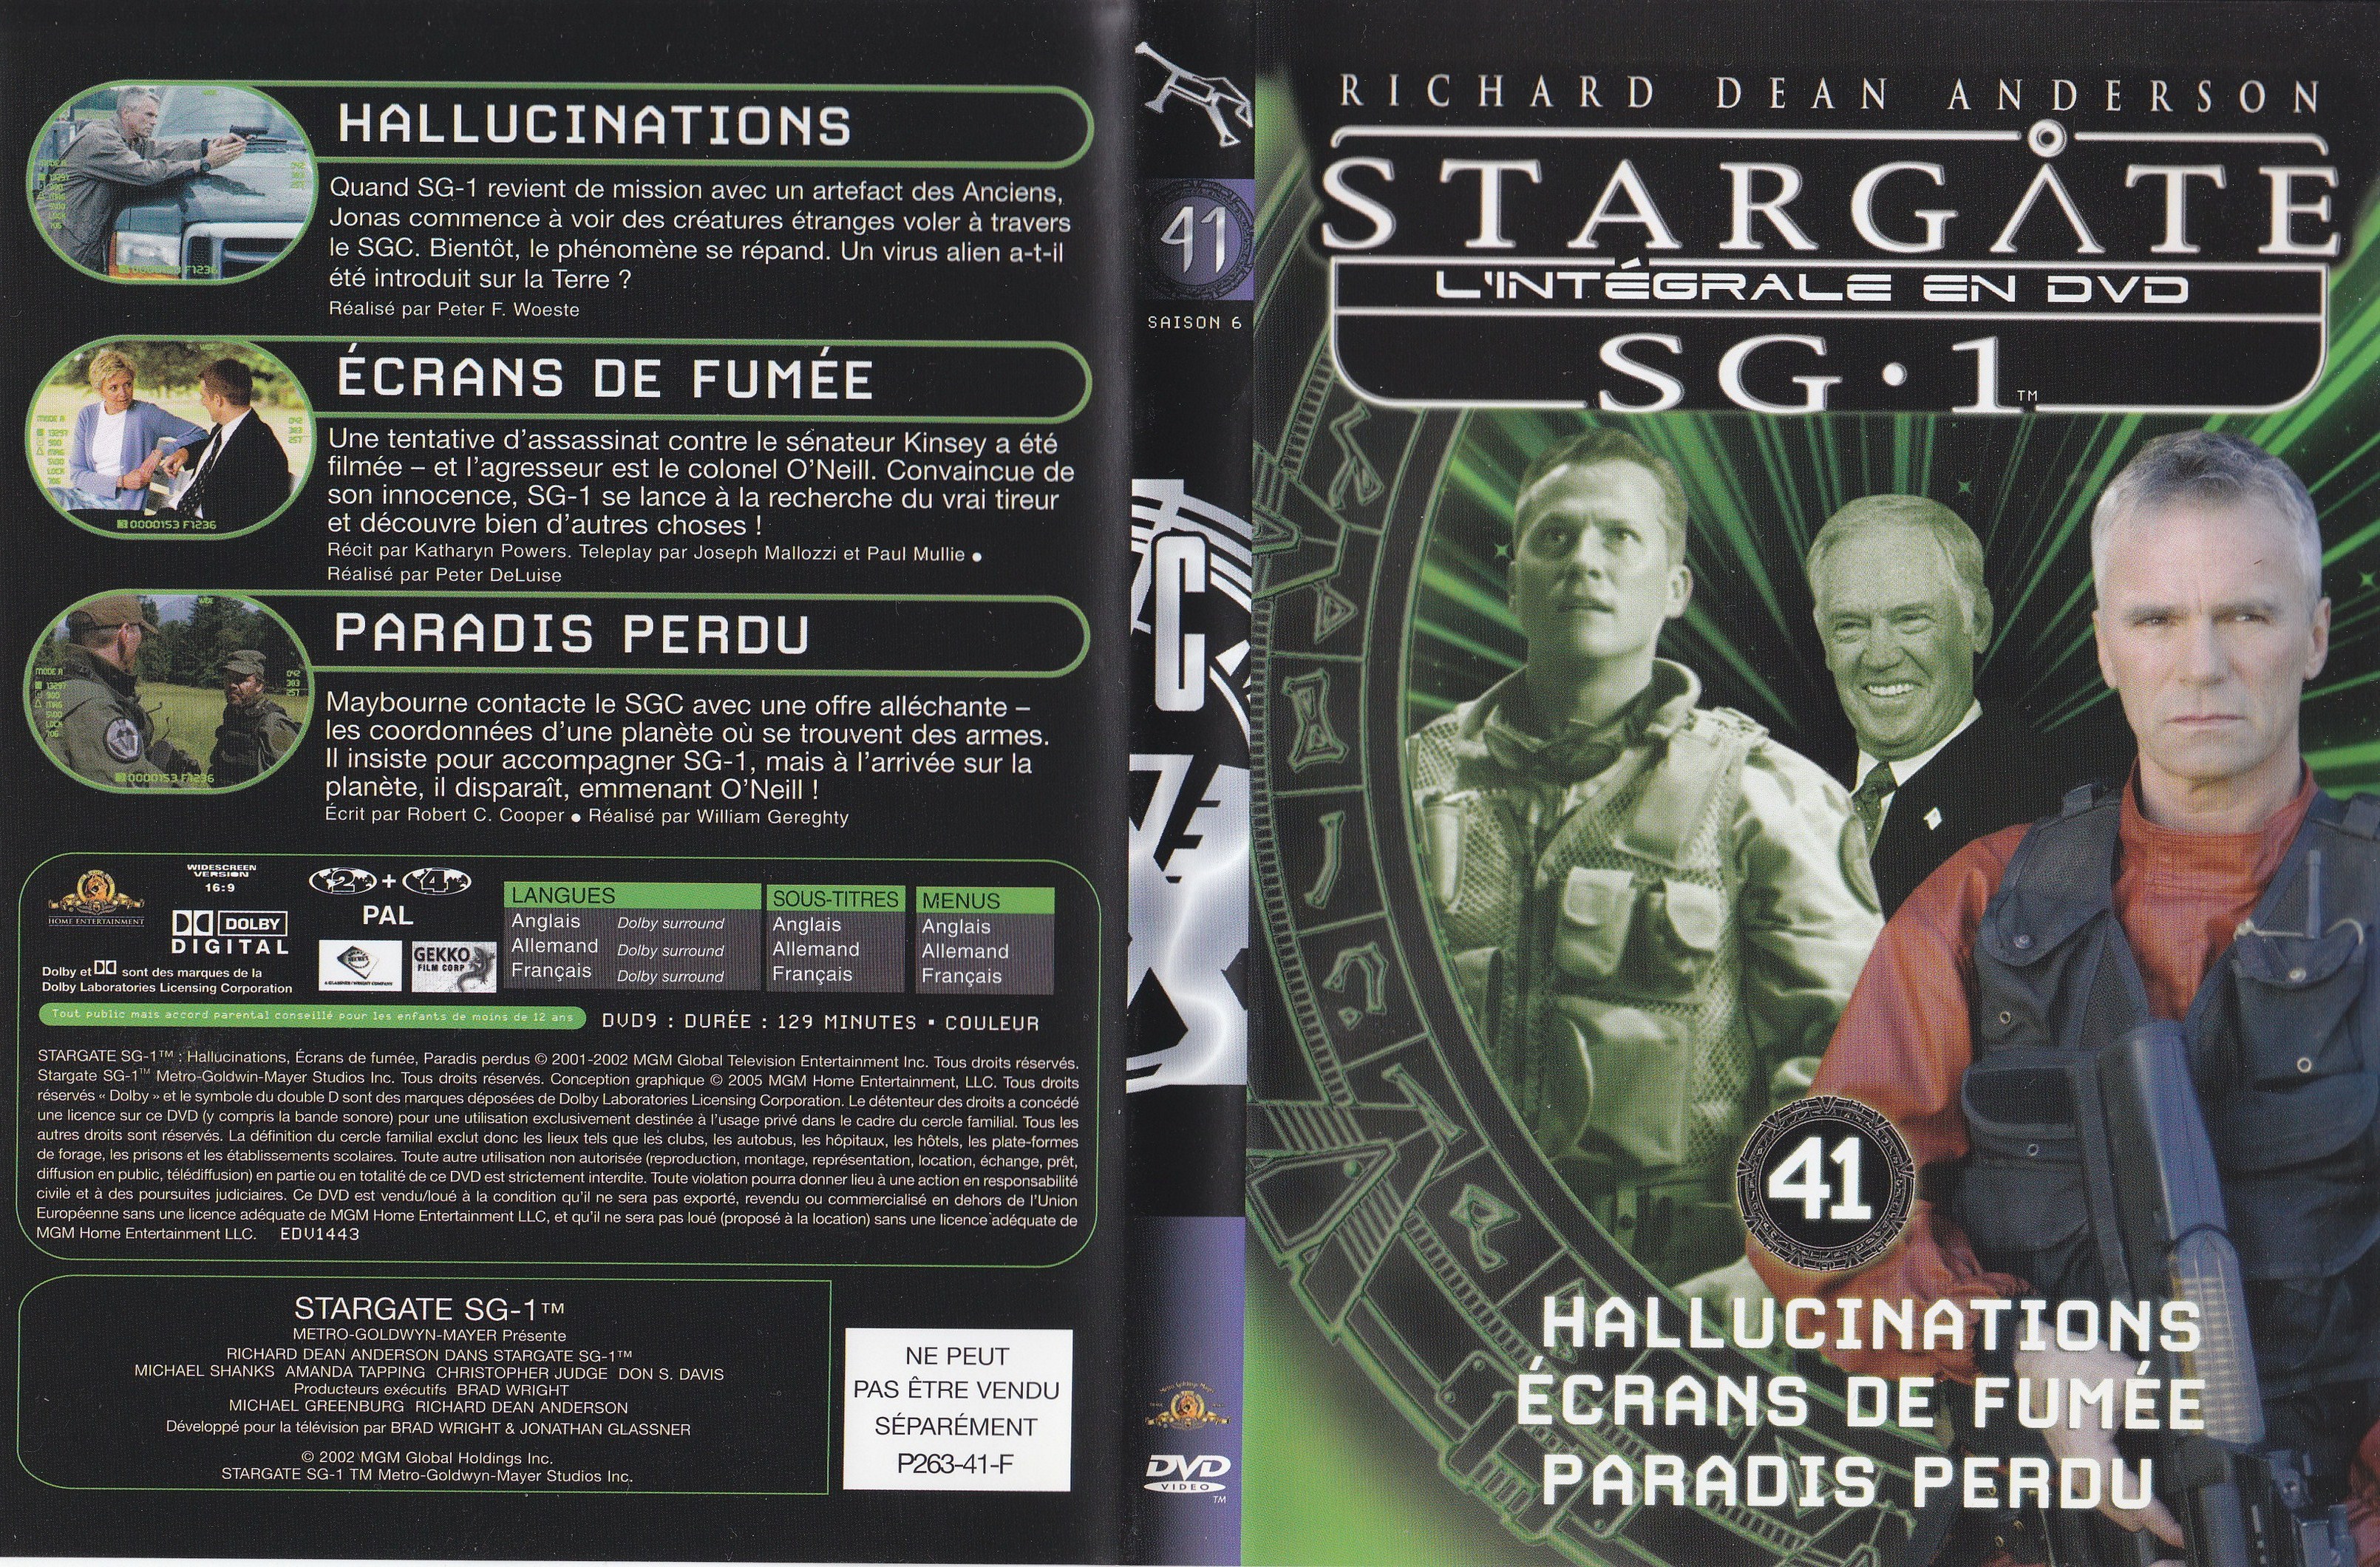 Stargate SG1 Intgrale Saison 6 vol 41